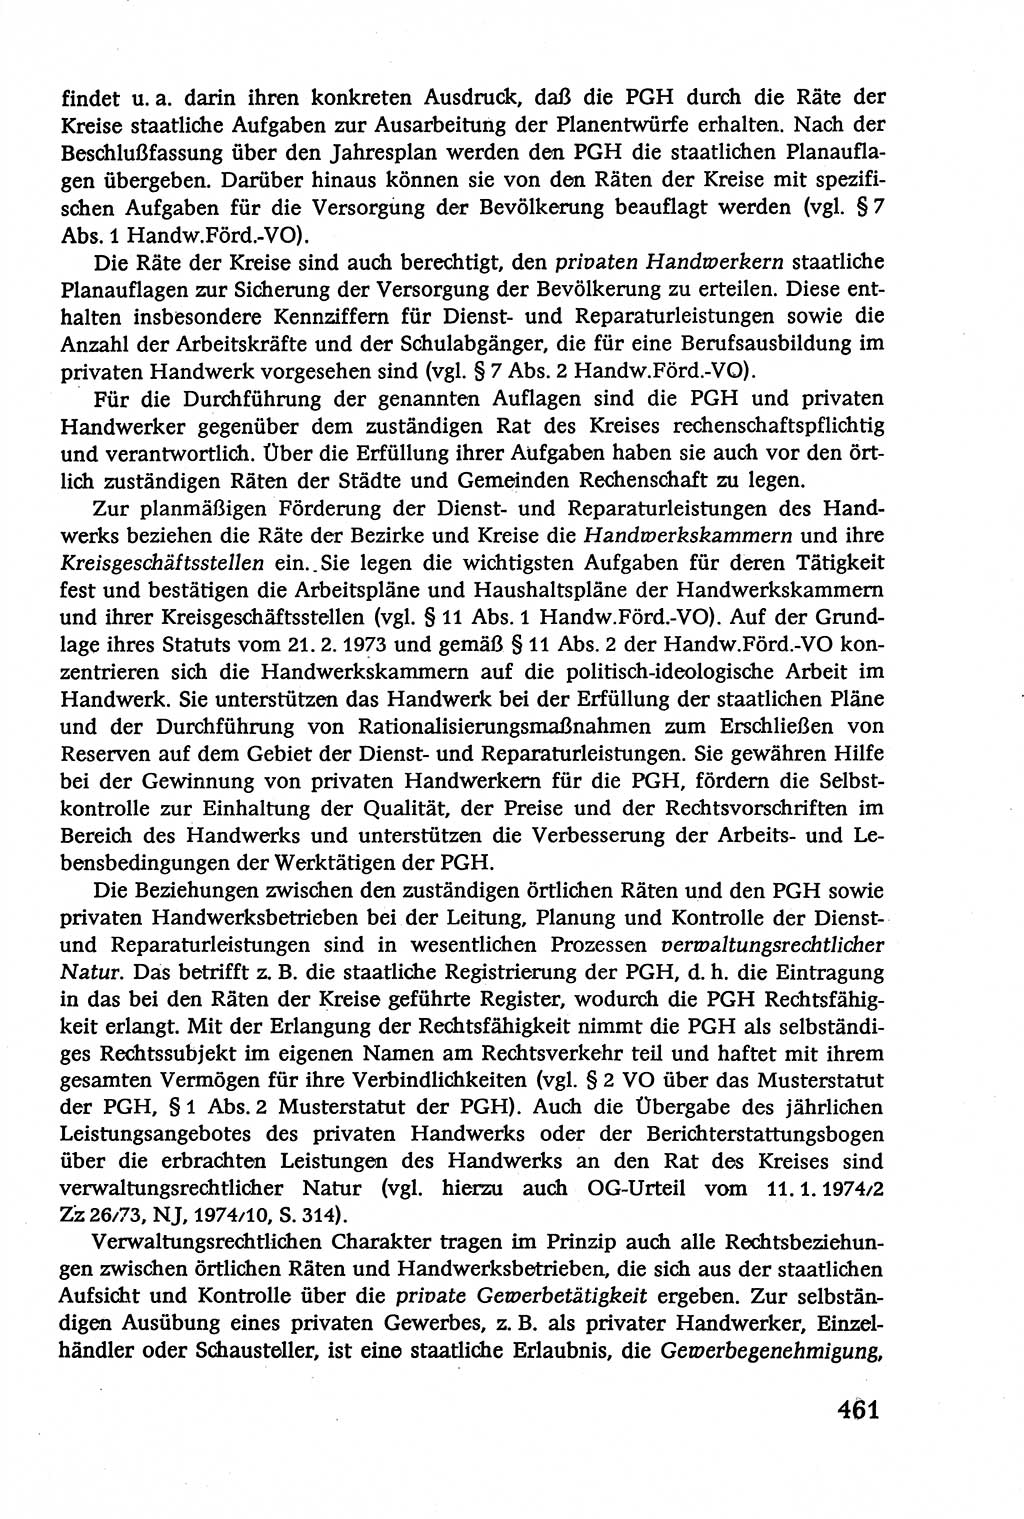 Verwaltungsrecht [Deutsche Demokratische Republik (DDR)], Lehrbuch 1979, Seite 461 (Verw.-R. DDR Lb. 1979, S. 461)